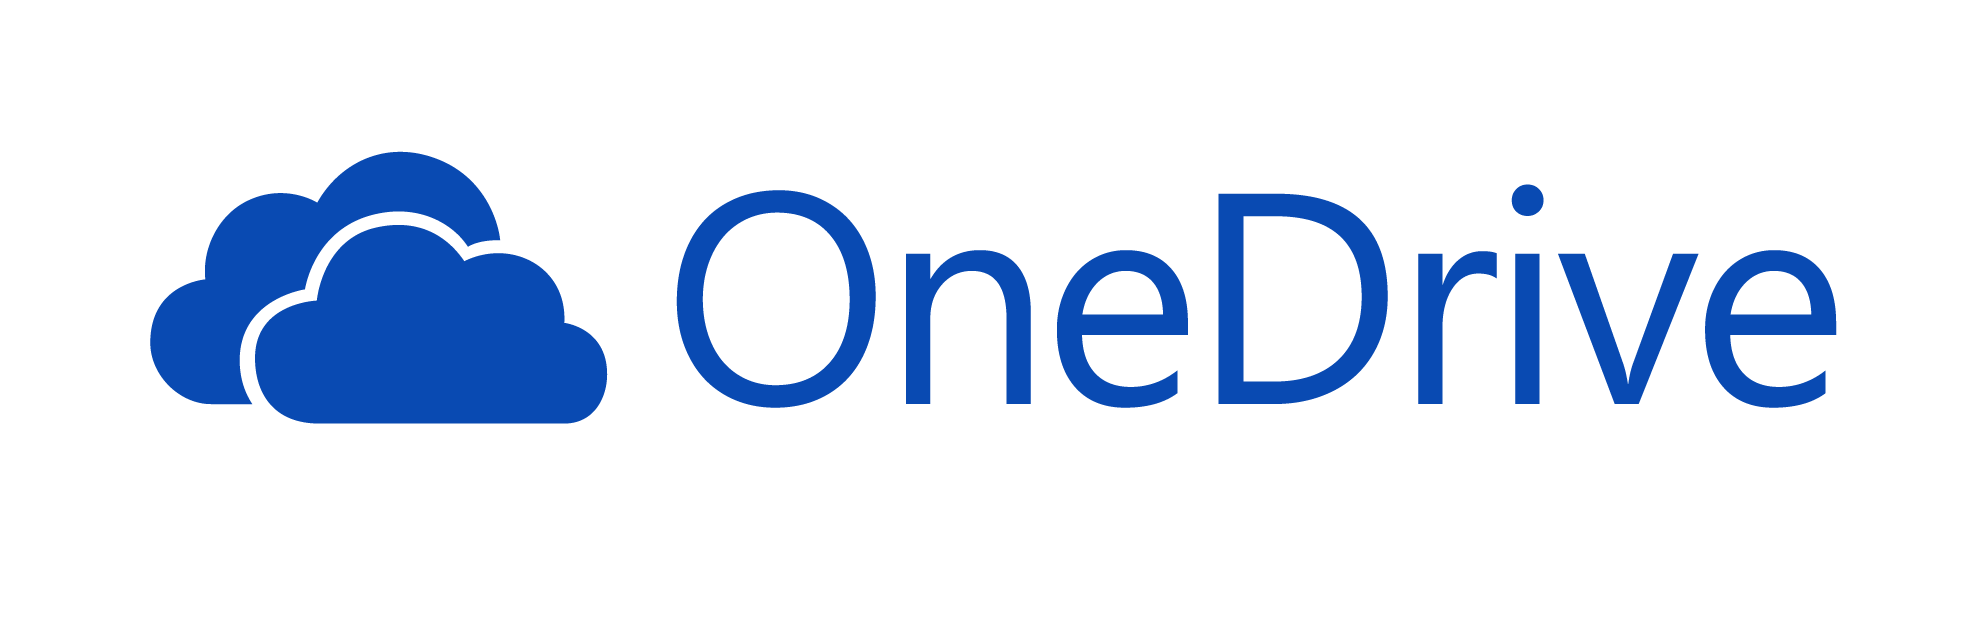 Onedrive Microsoft